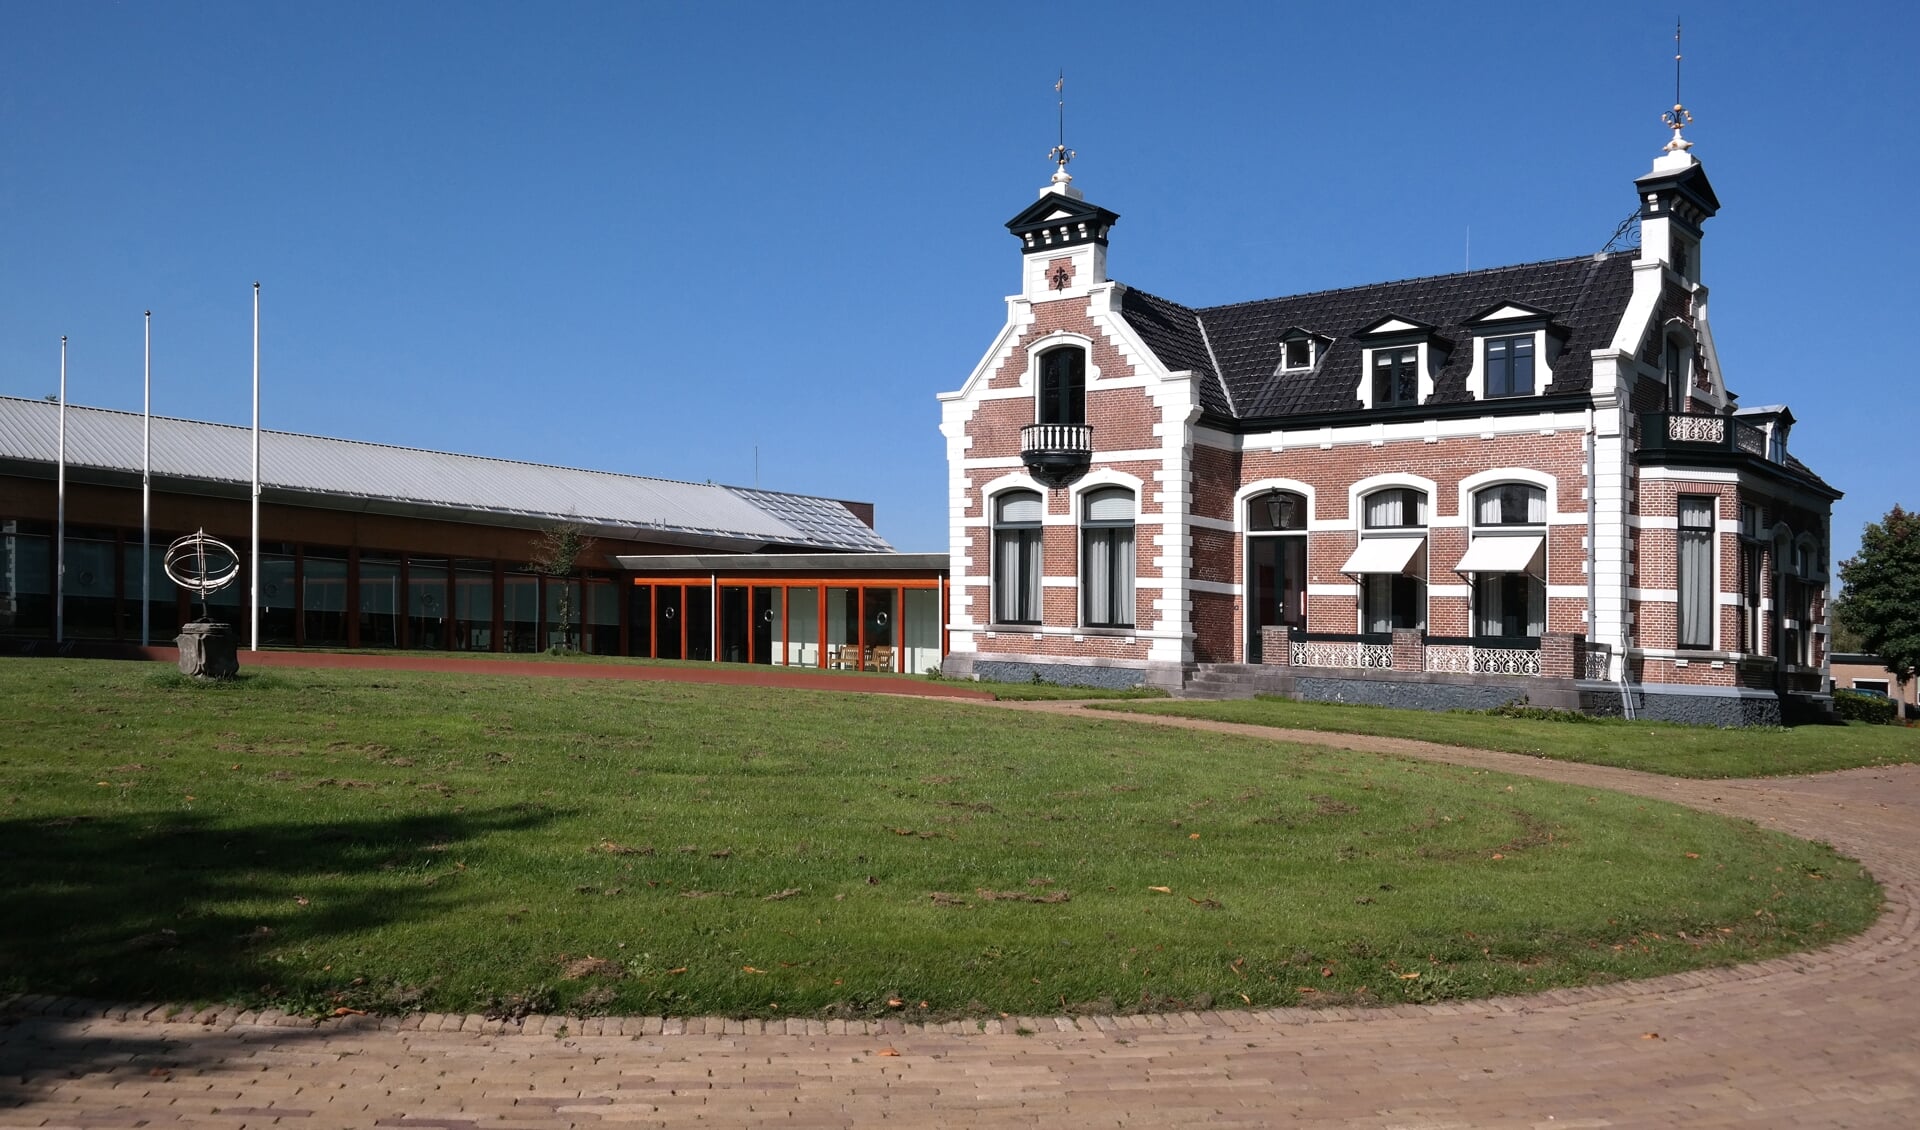 Aan villa ‘Westenstein’, onderdeel van het gemeentehuis in Kollum, wordt bij de verkoop veel belang gehecht.